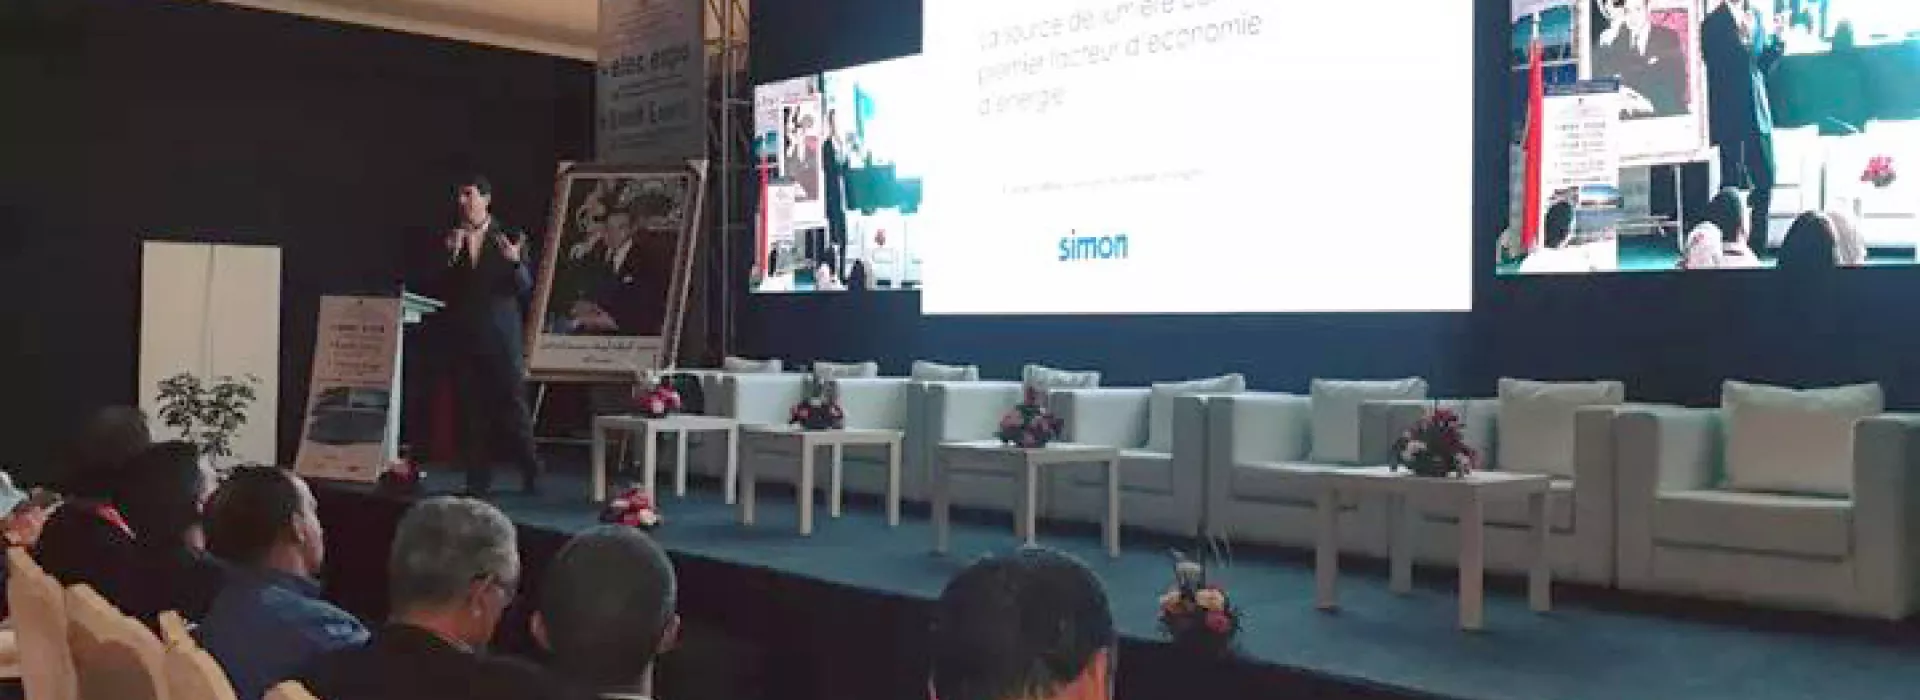 conference-simon-maroc